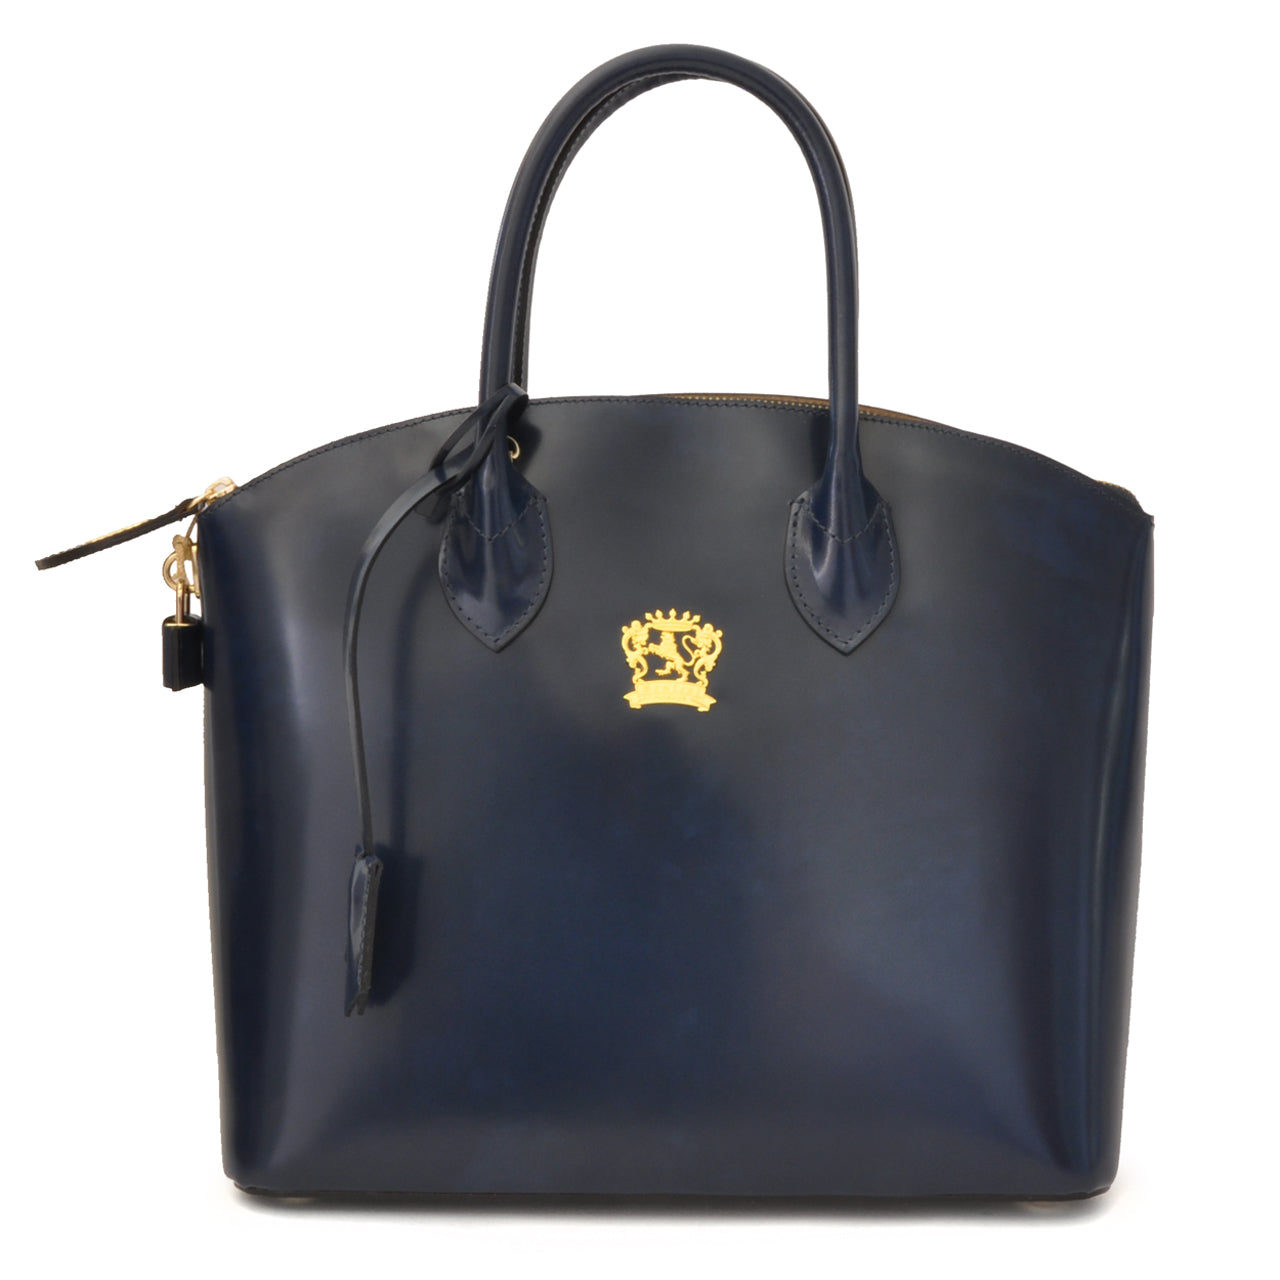 Pratesi Versilia Woman Bag R348 - Brunelleschi Leather Blue